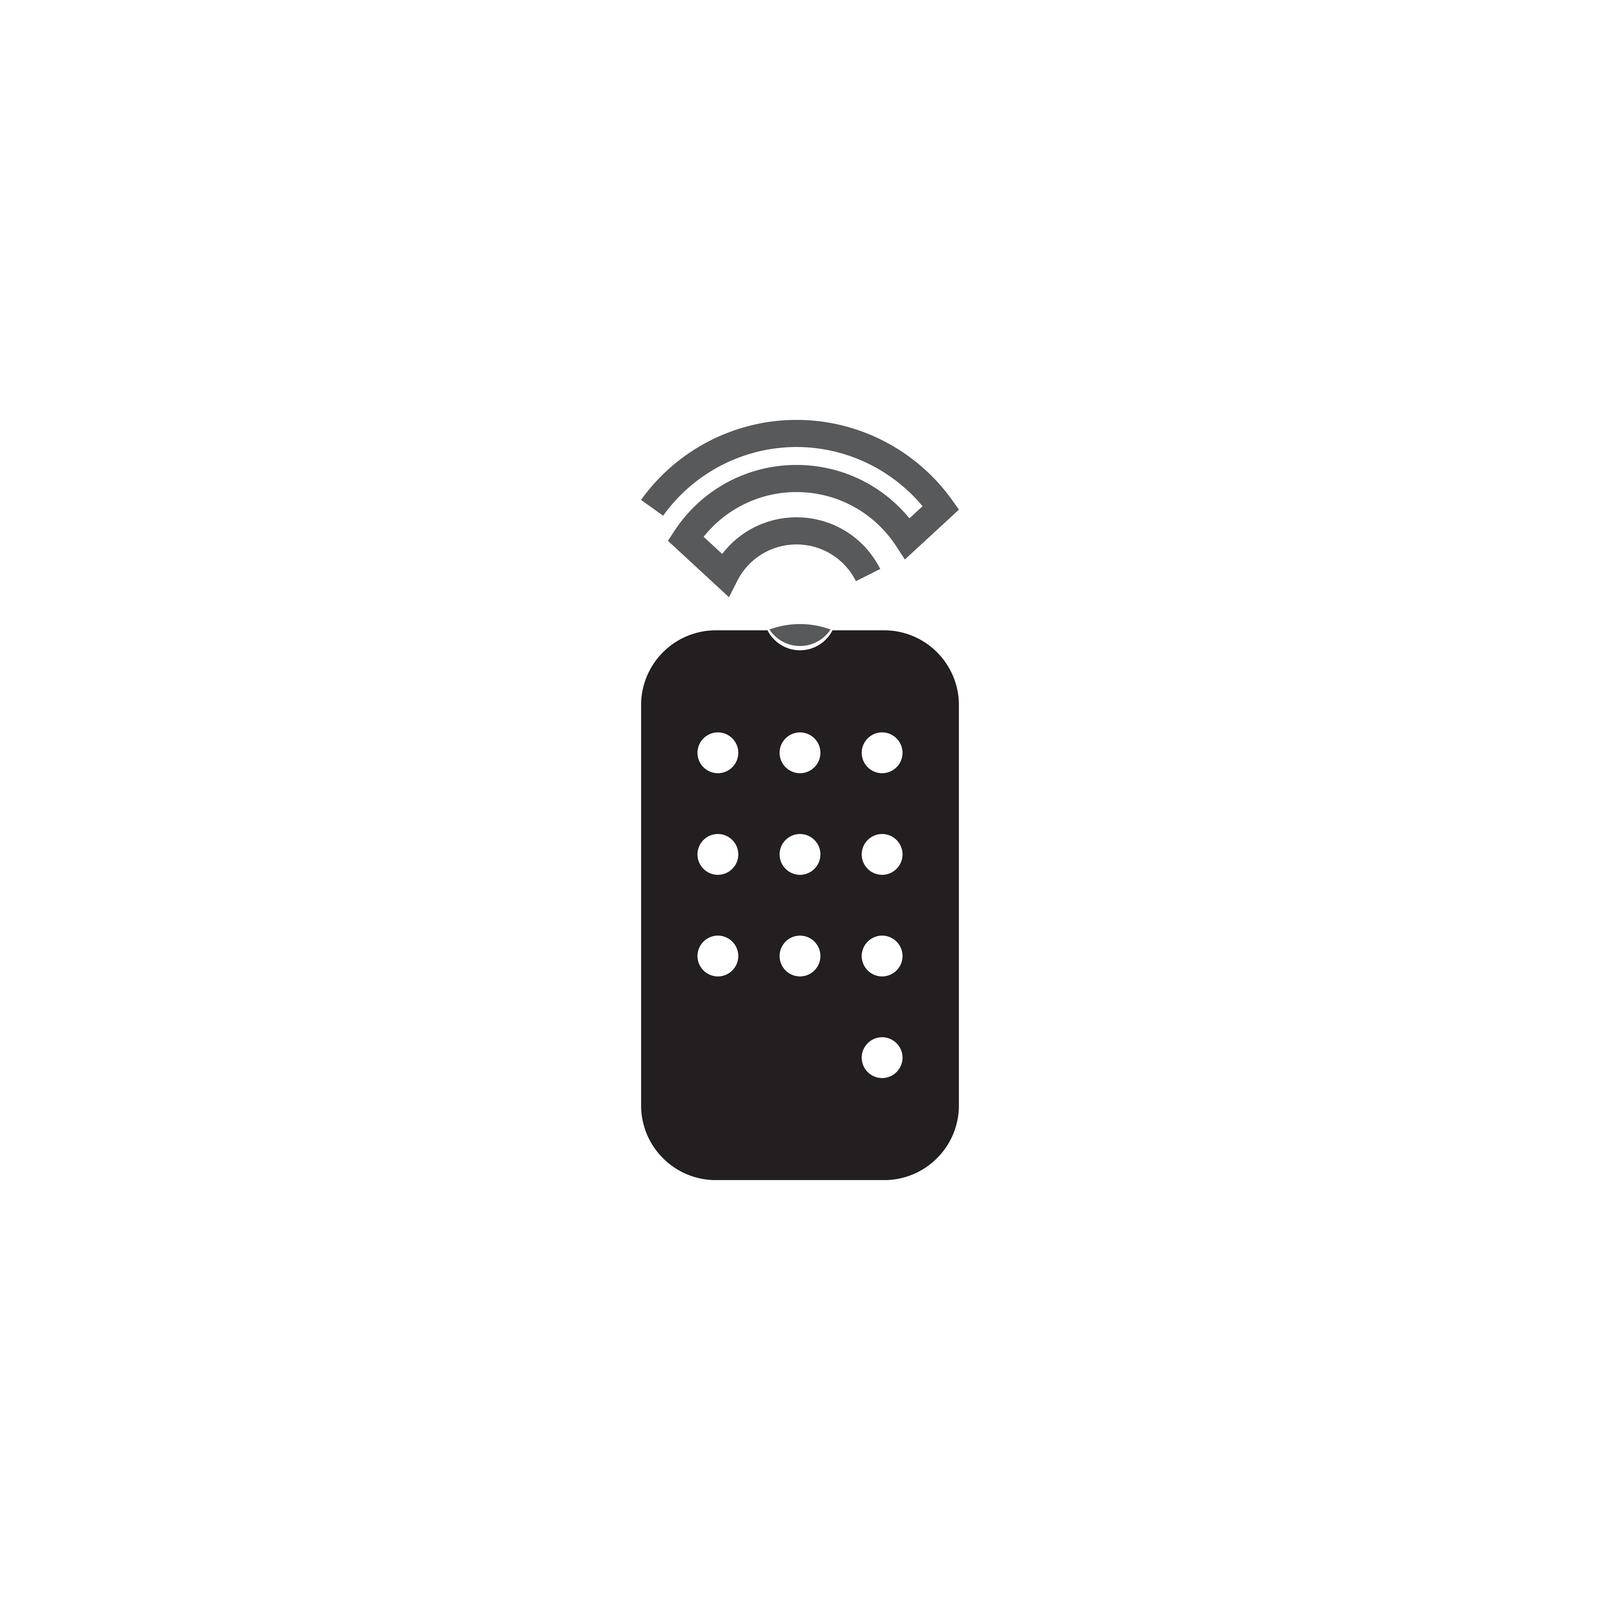 Remote icon vector illustration symbol design